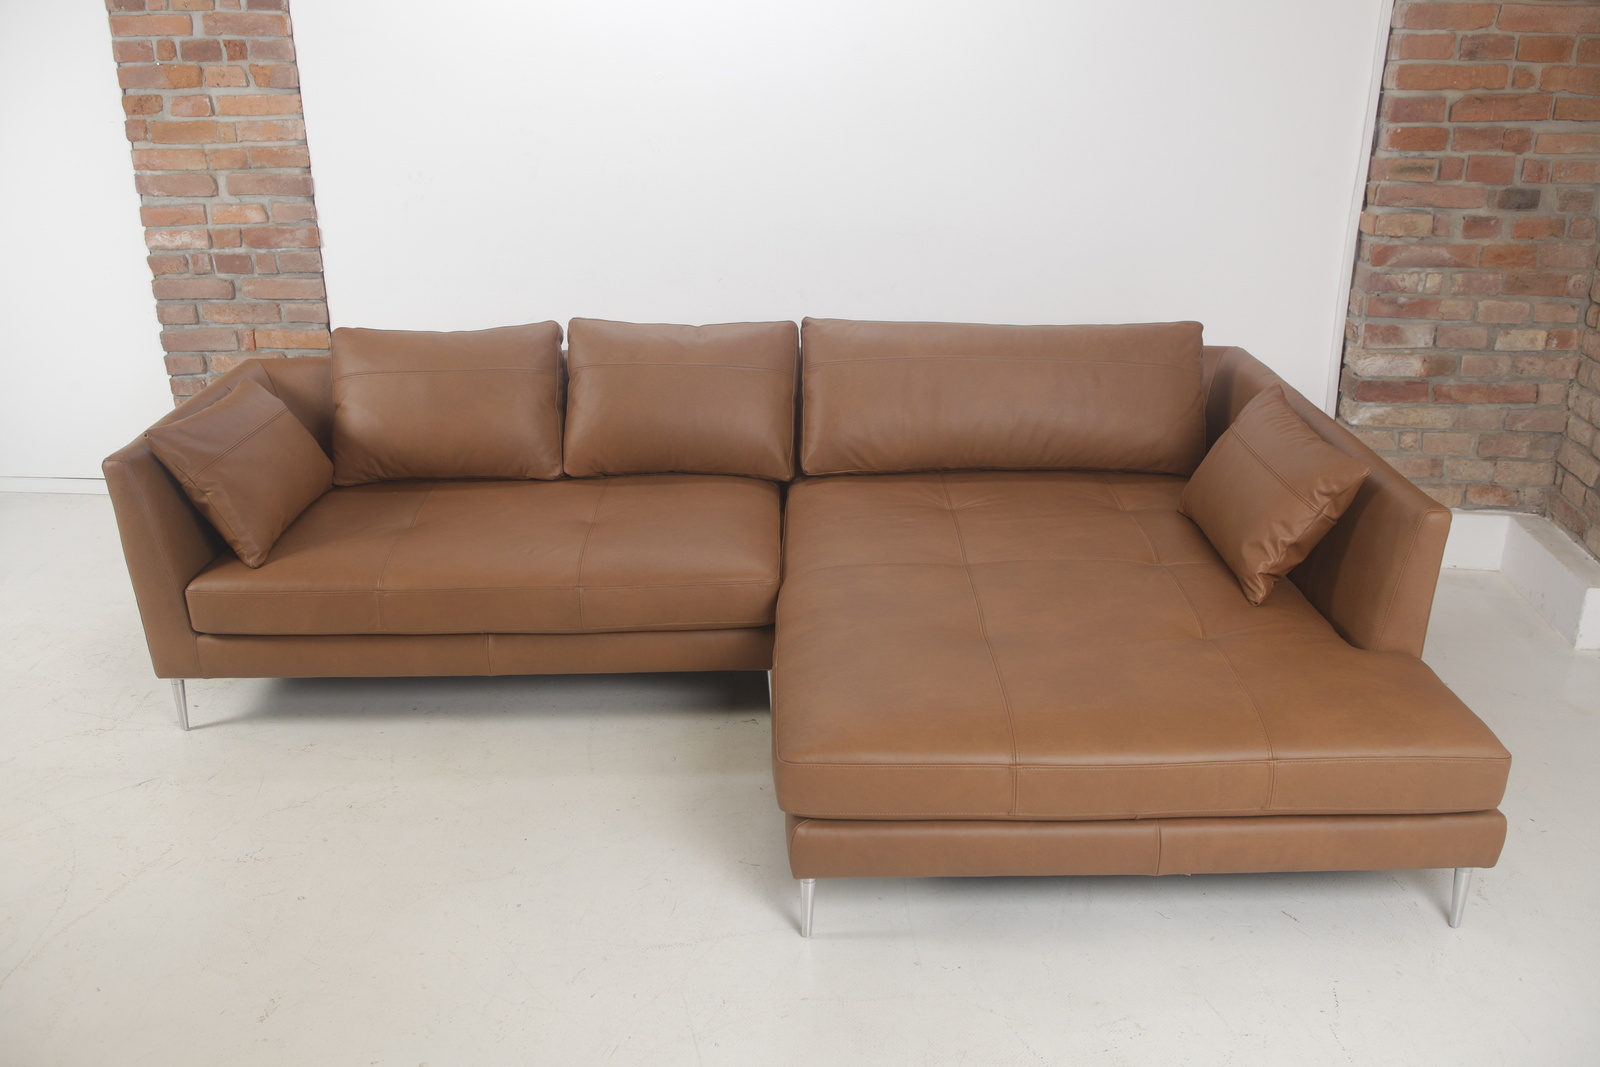 G862 loft  pohovka sofa canyon  kvalitni kozena  gutmann factory   mg 0212